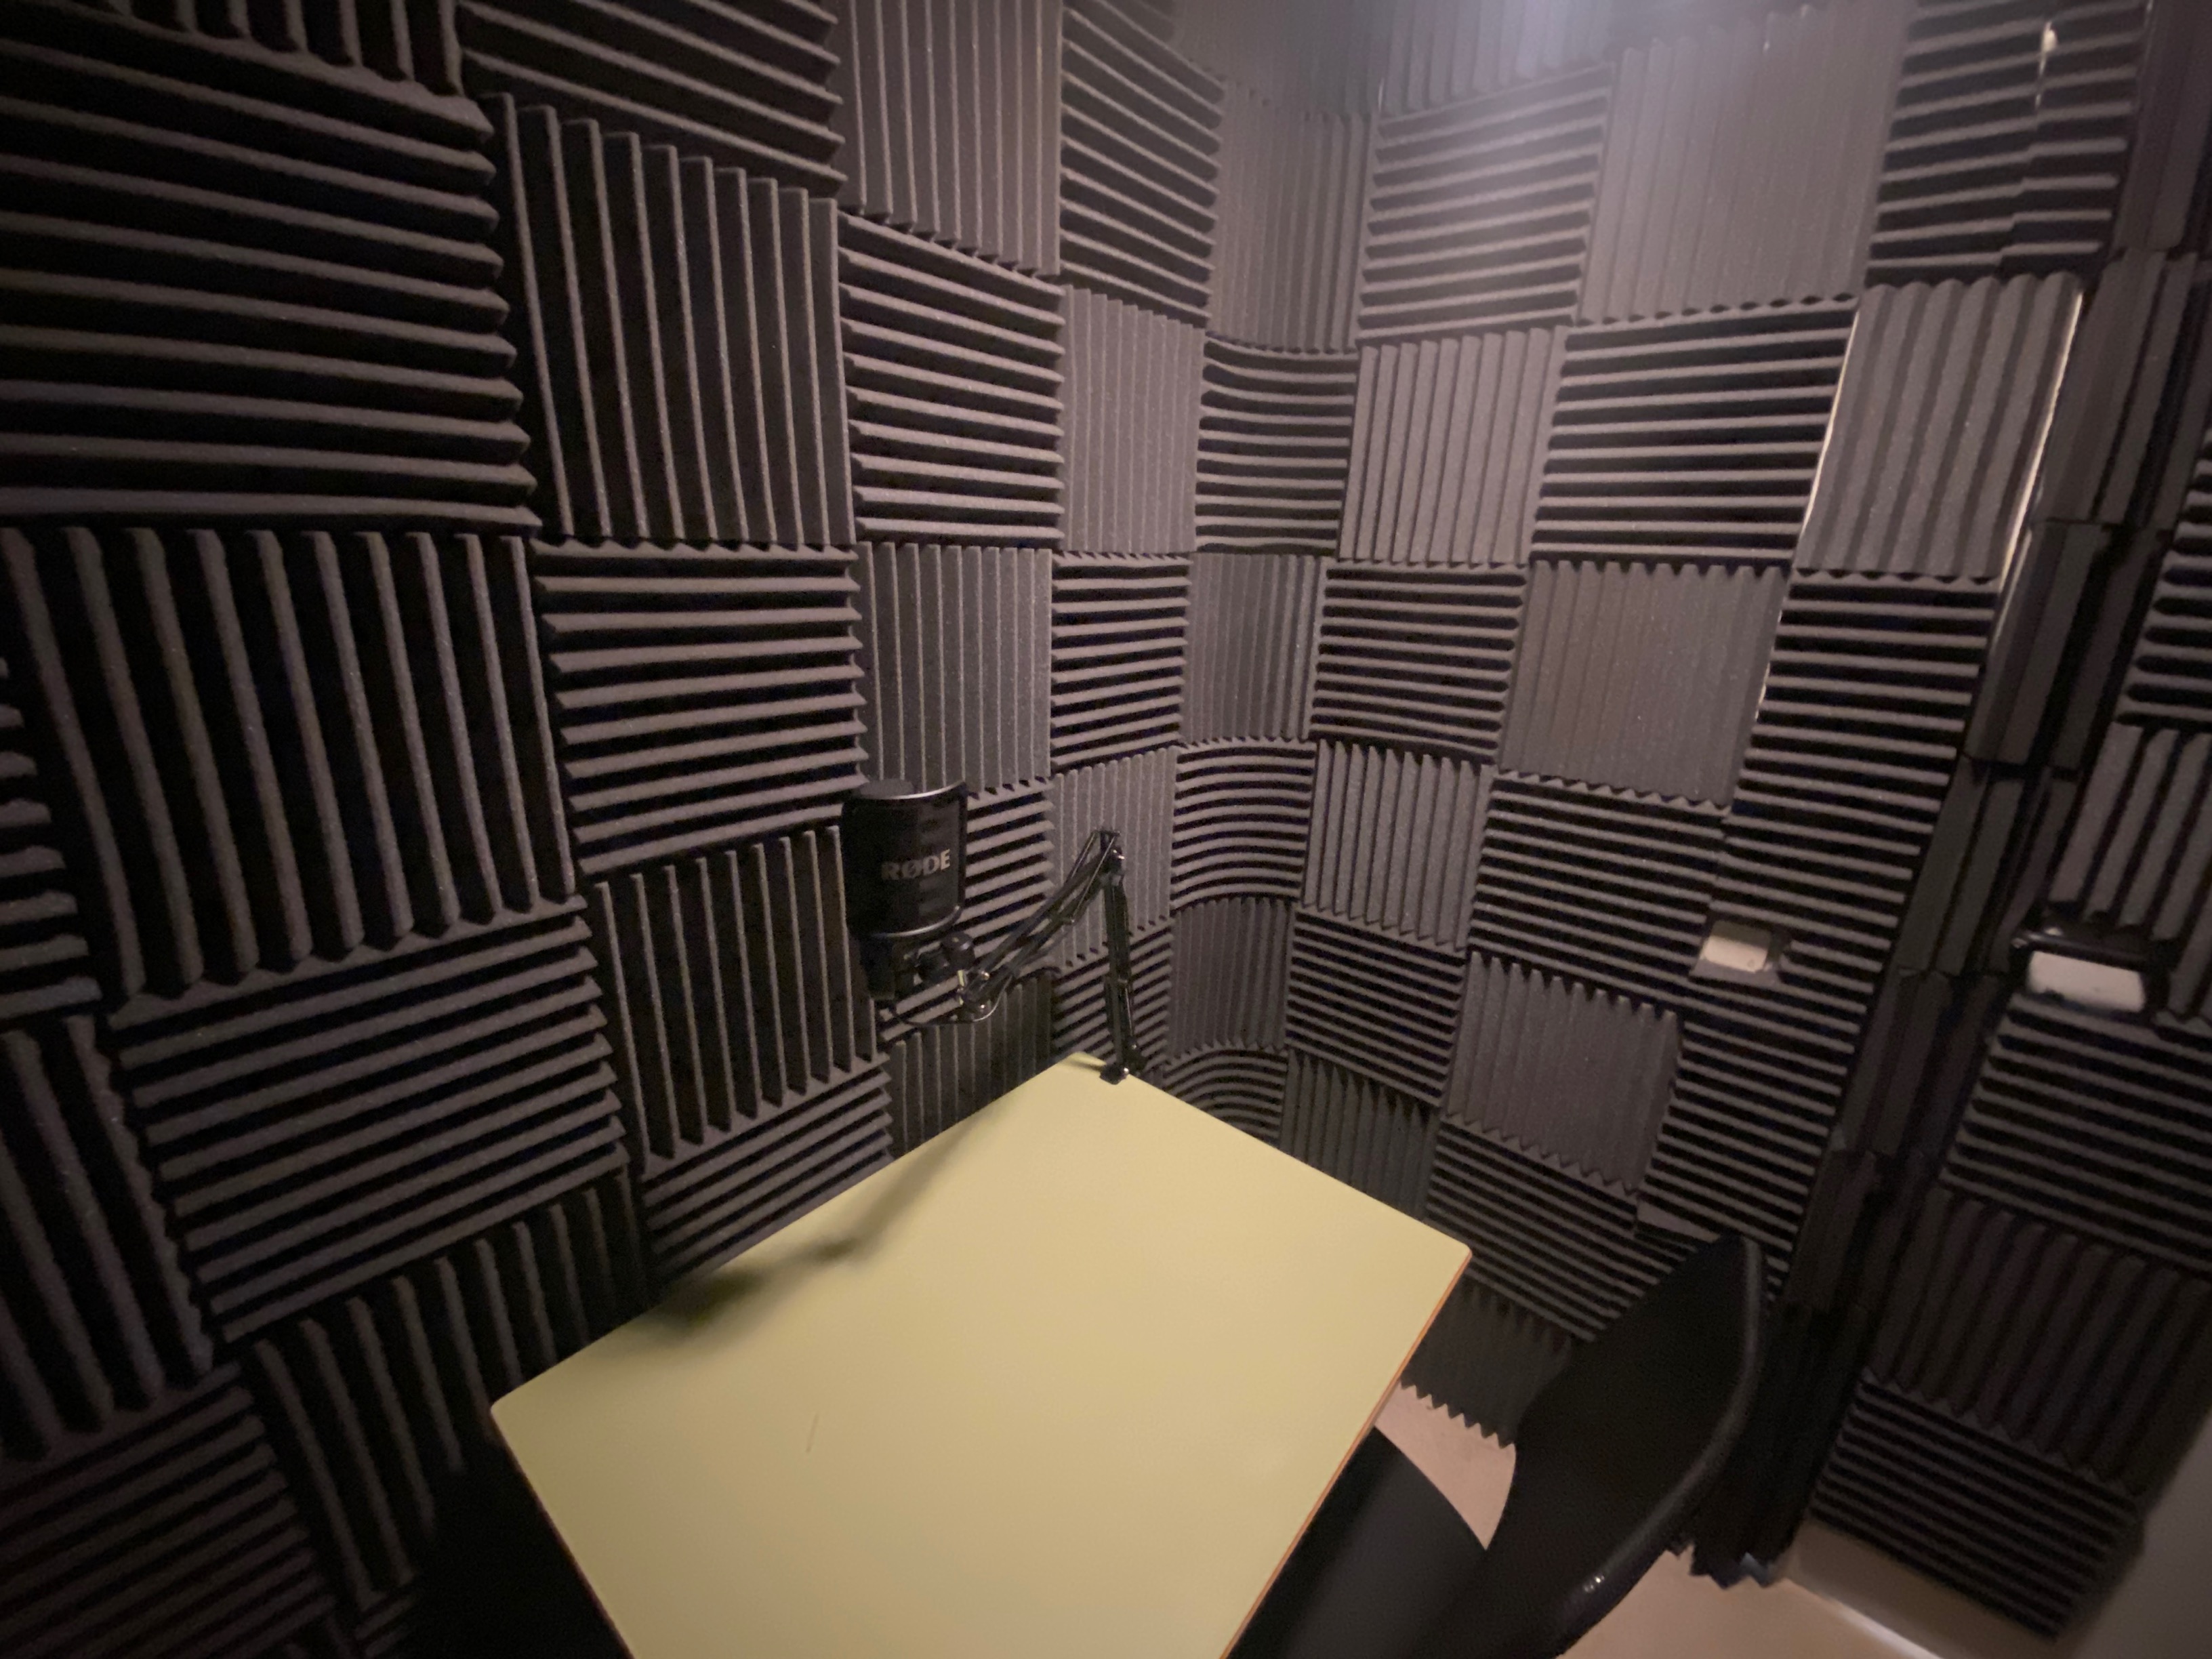 Sala de grabación de los podcast. Mesa y silla con micro en una sala con revestimiento de paneles acústicos negros.